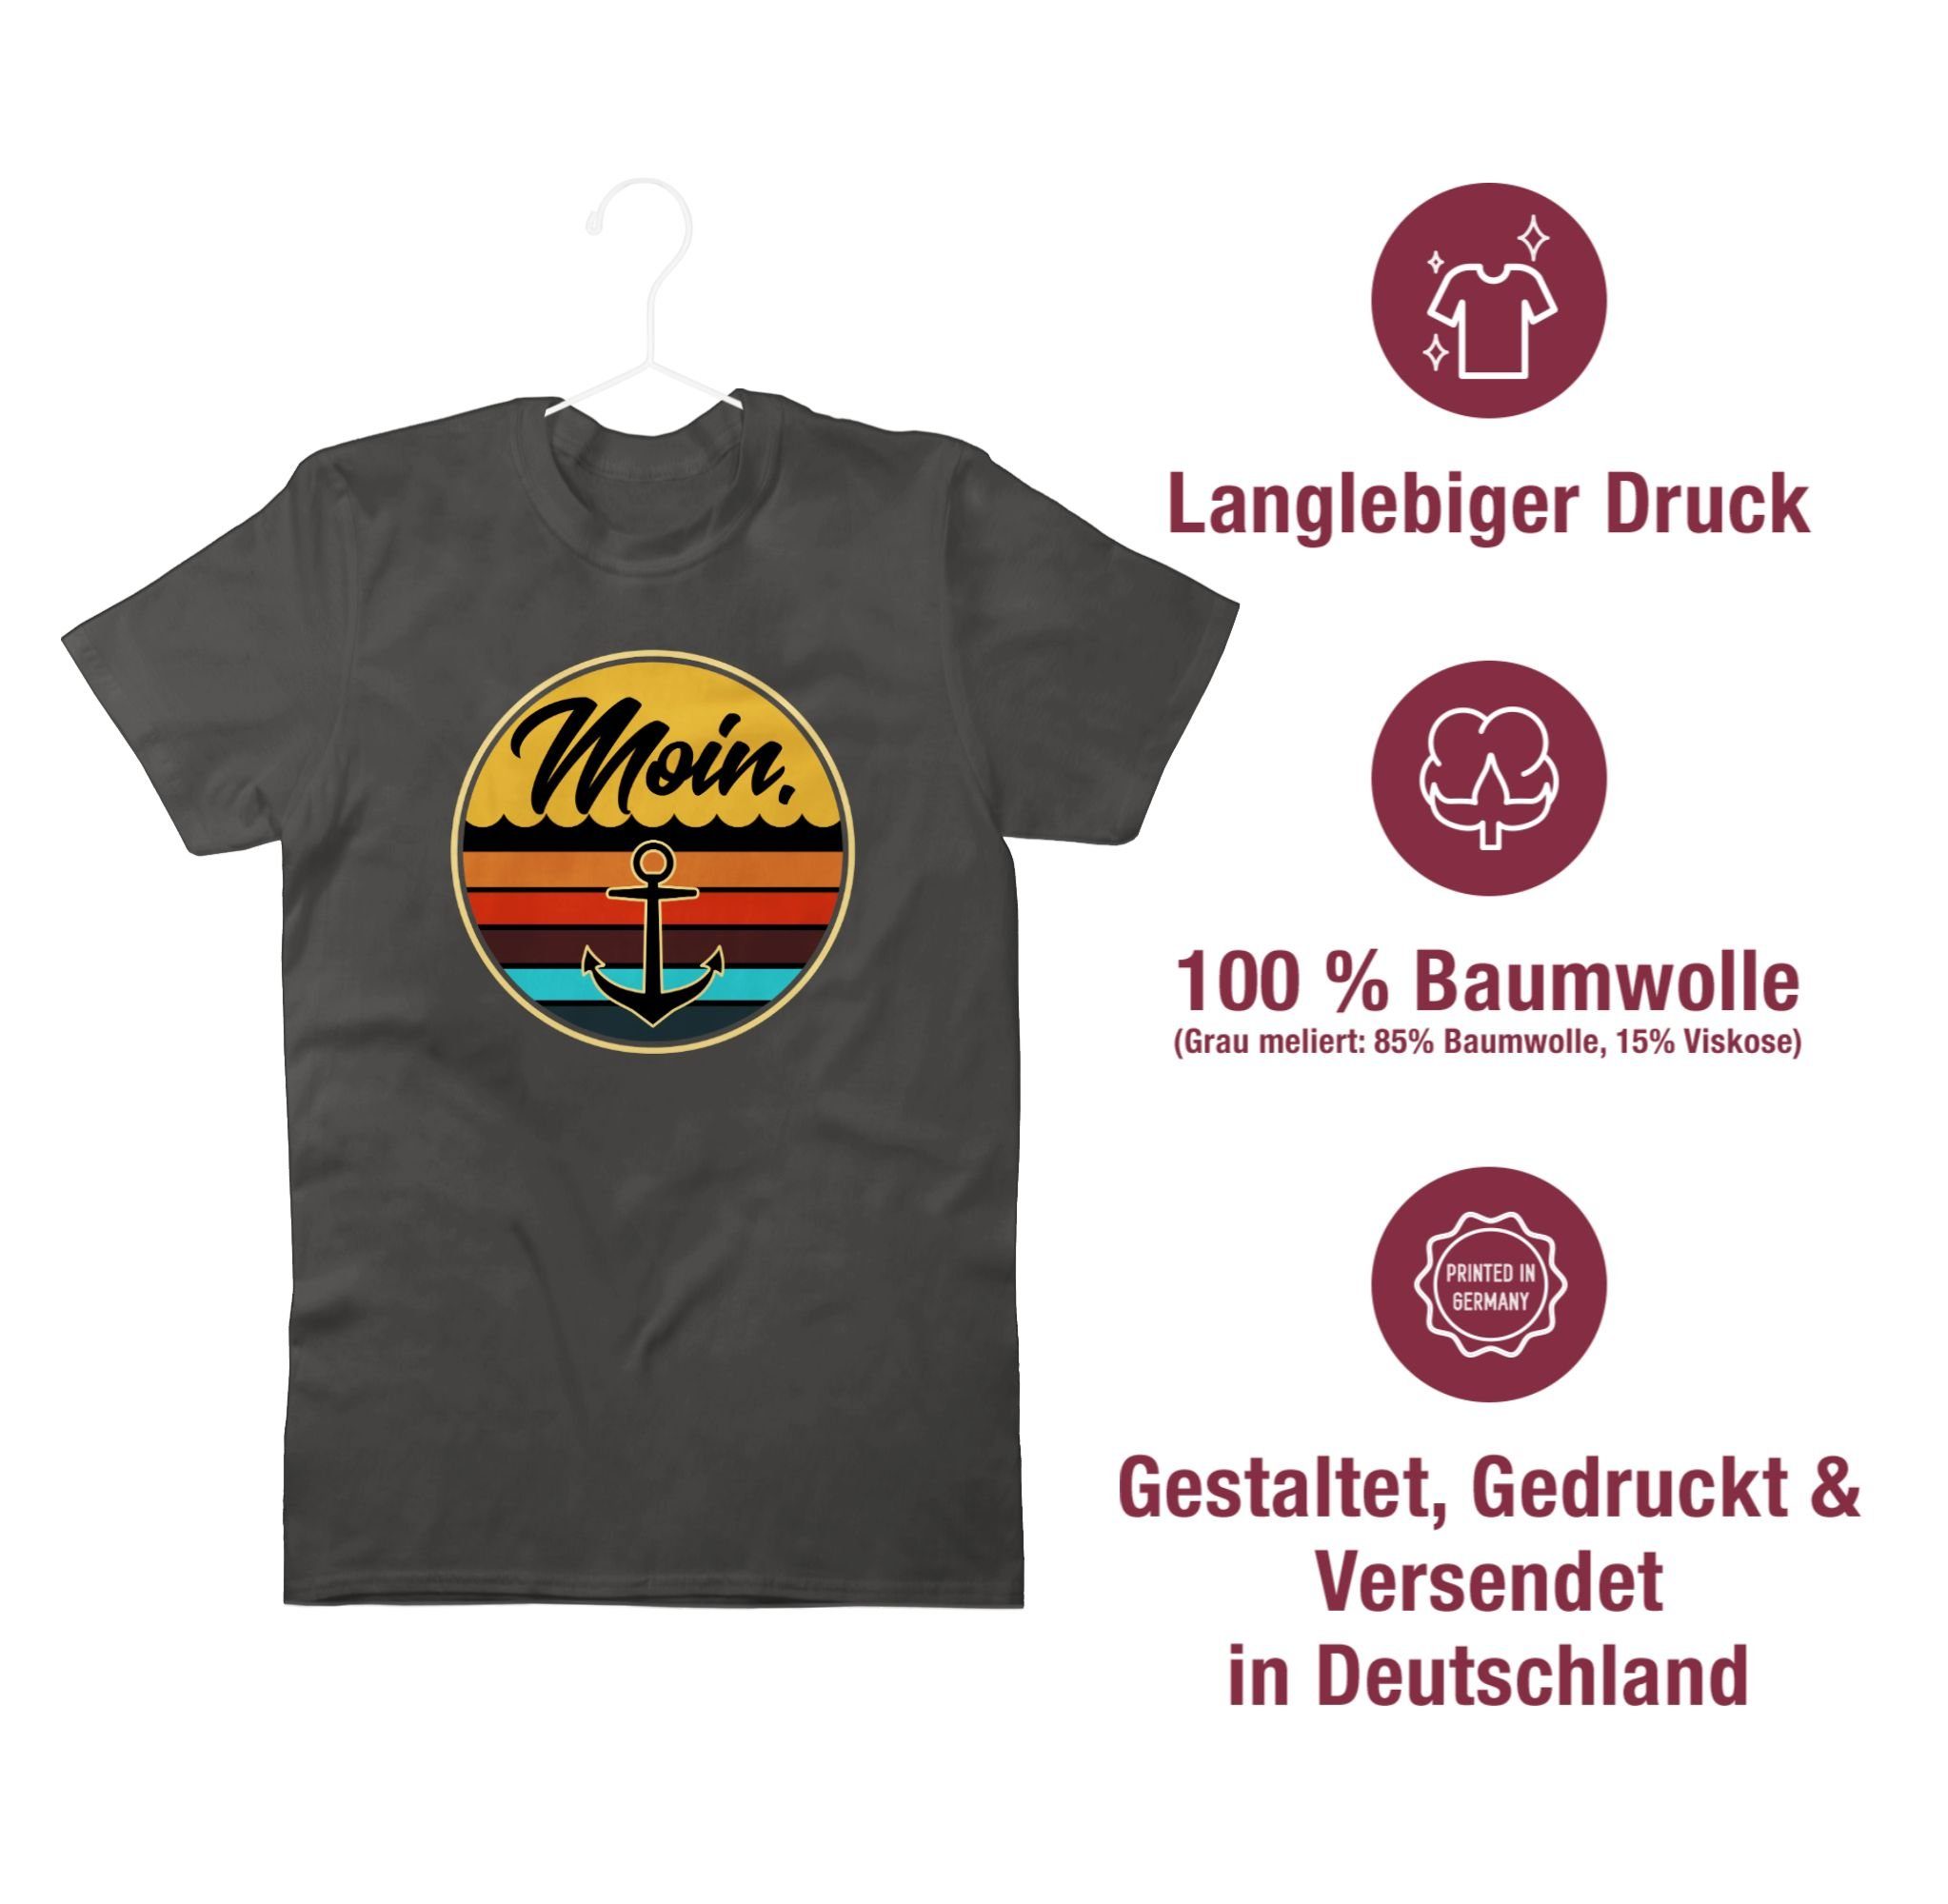 Herren Shirts Shirtracer T-Shirt Moin Retro Badge - Sprüche Statement mit Spruch - Herren Premium T-Shirt Spruchshirt mit Sprüch